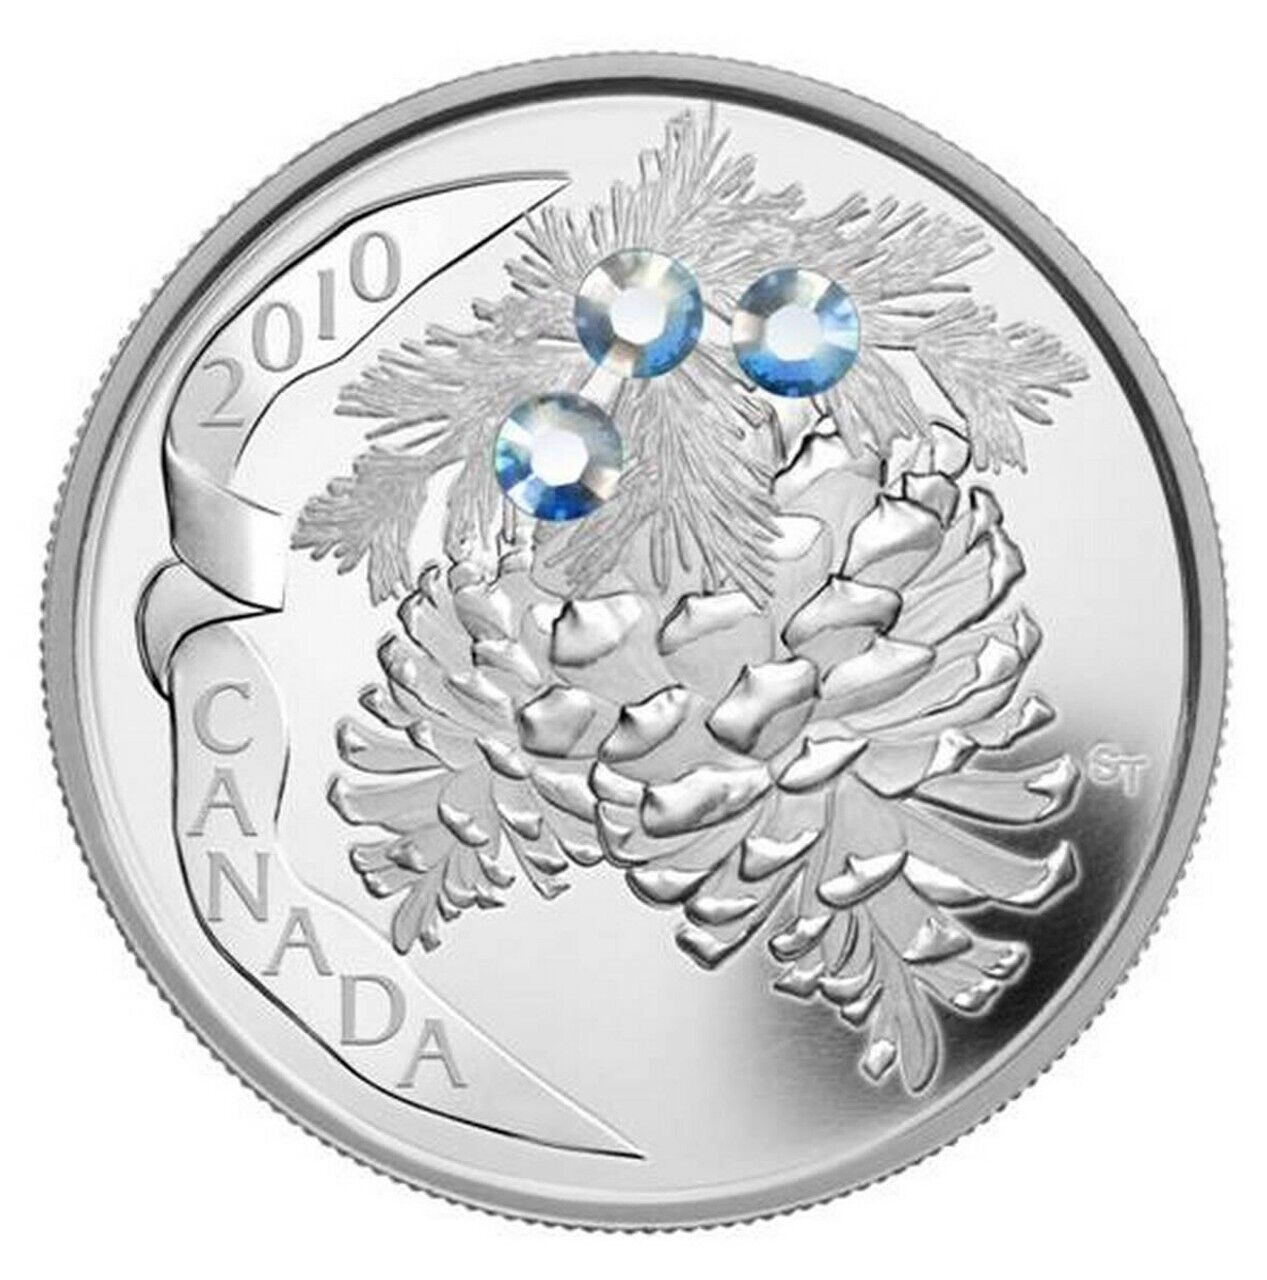 1 Oz Silver Coin 2010 $20 Canada Holiday Pine Cones Moonlight Swarovski Crystals-classypw.com-1